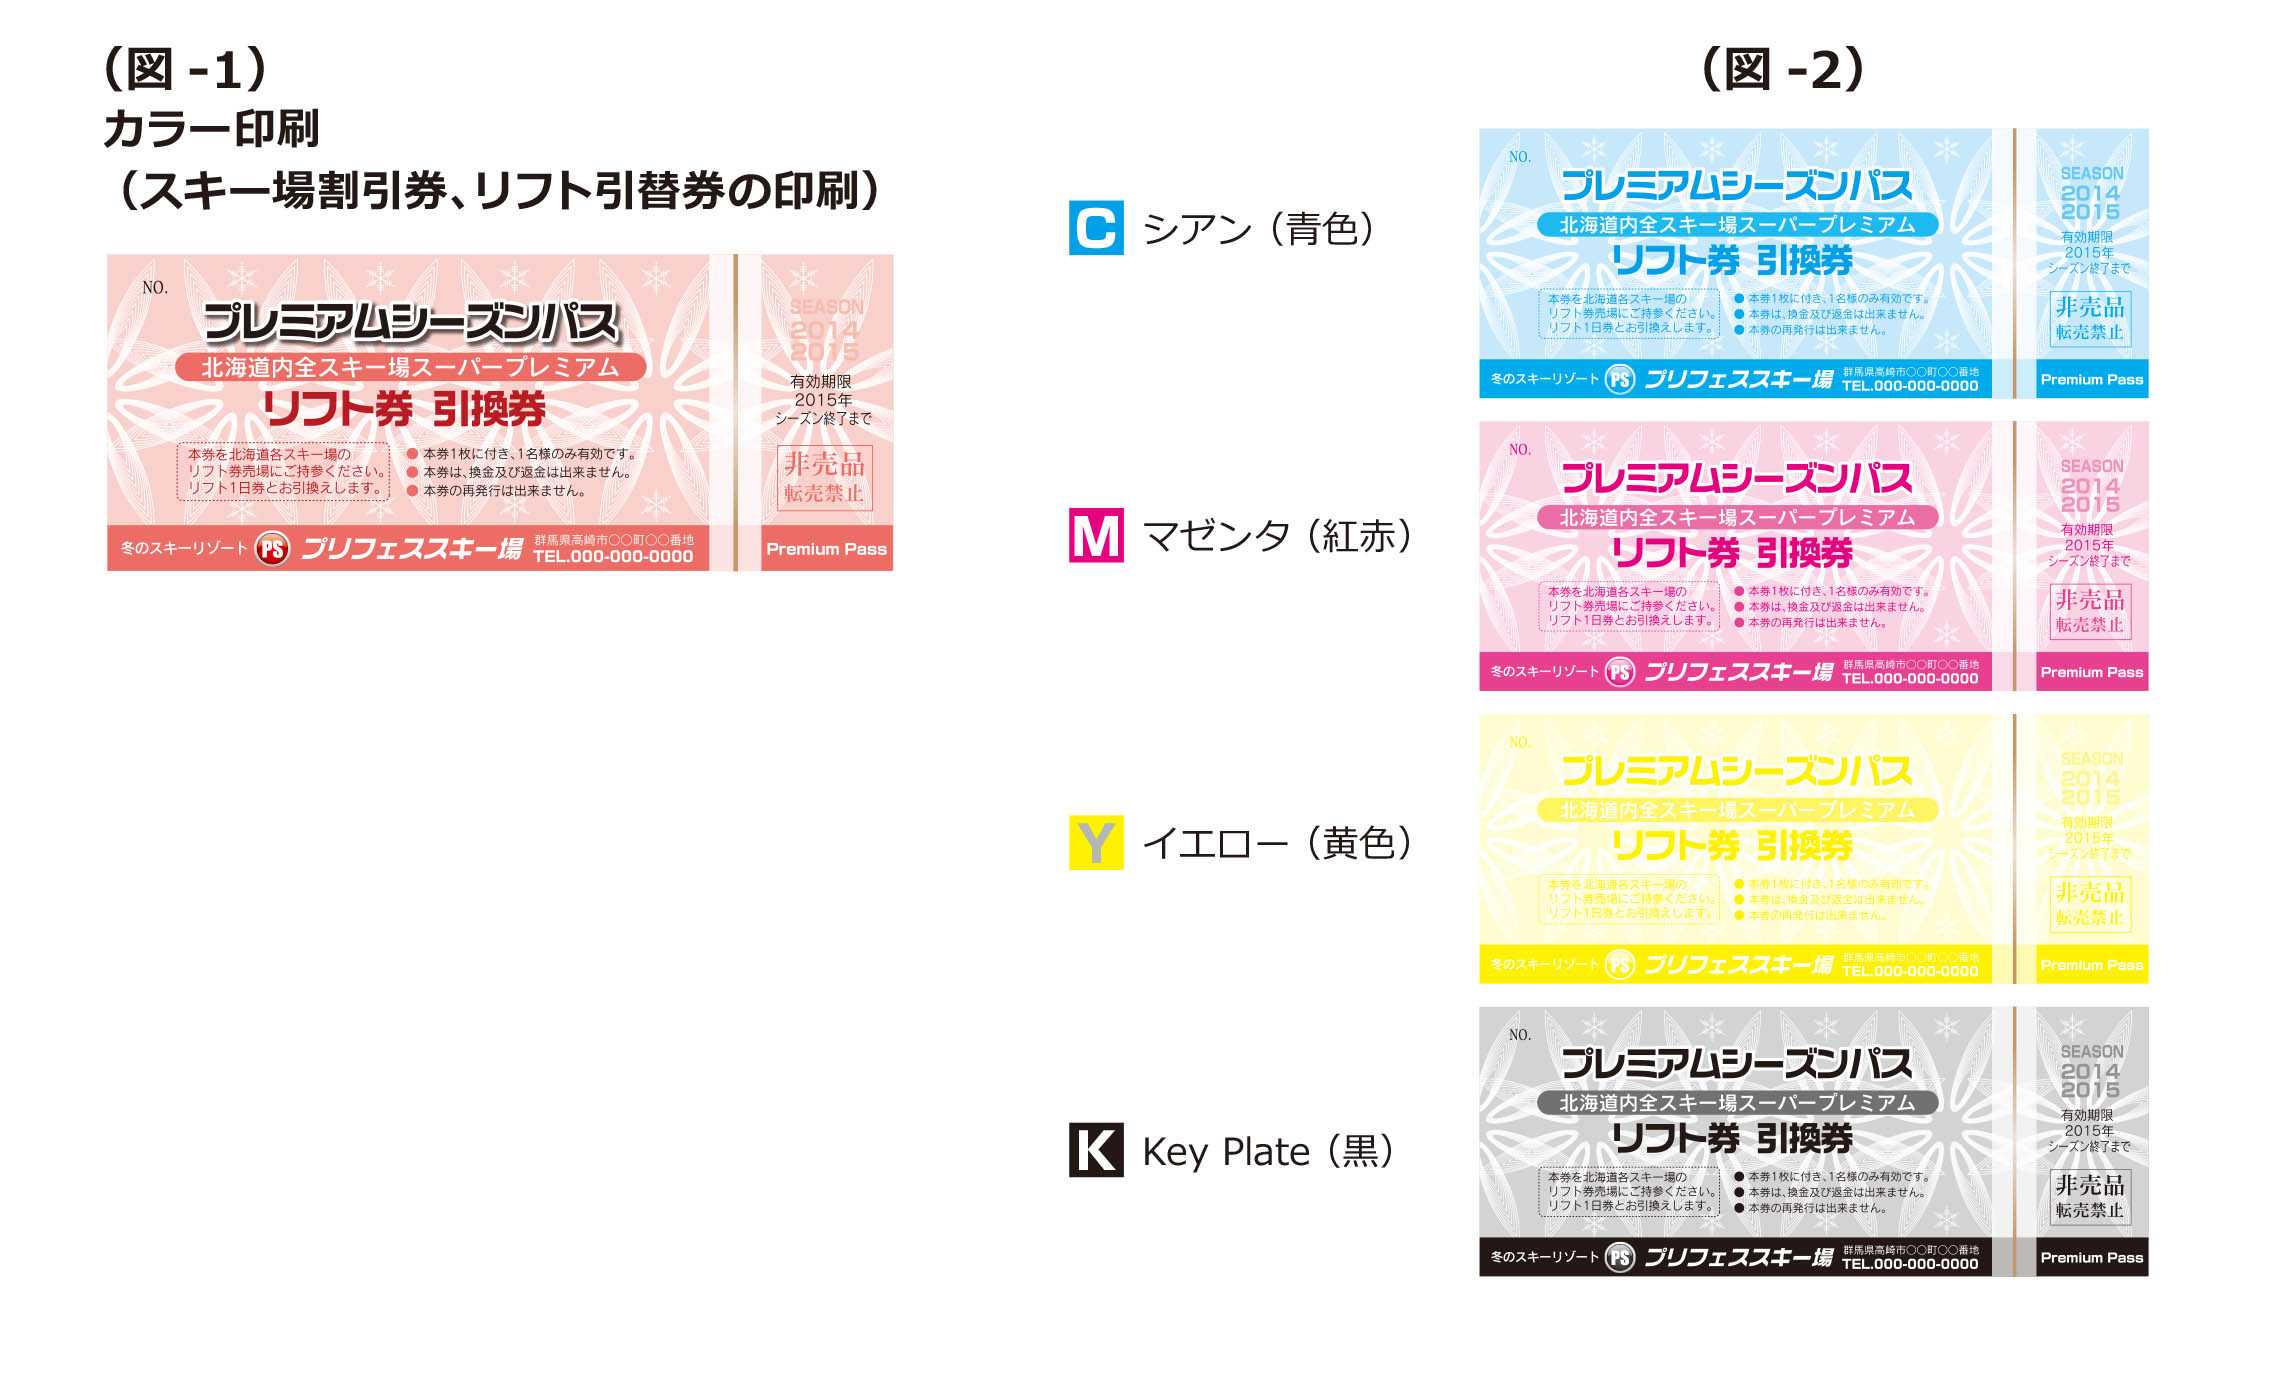 スキー場割引券,リフト引換券等の印刷の色数について カラー印刷 カラー4原色